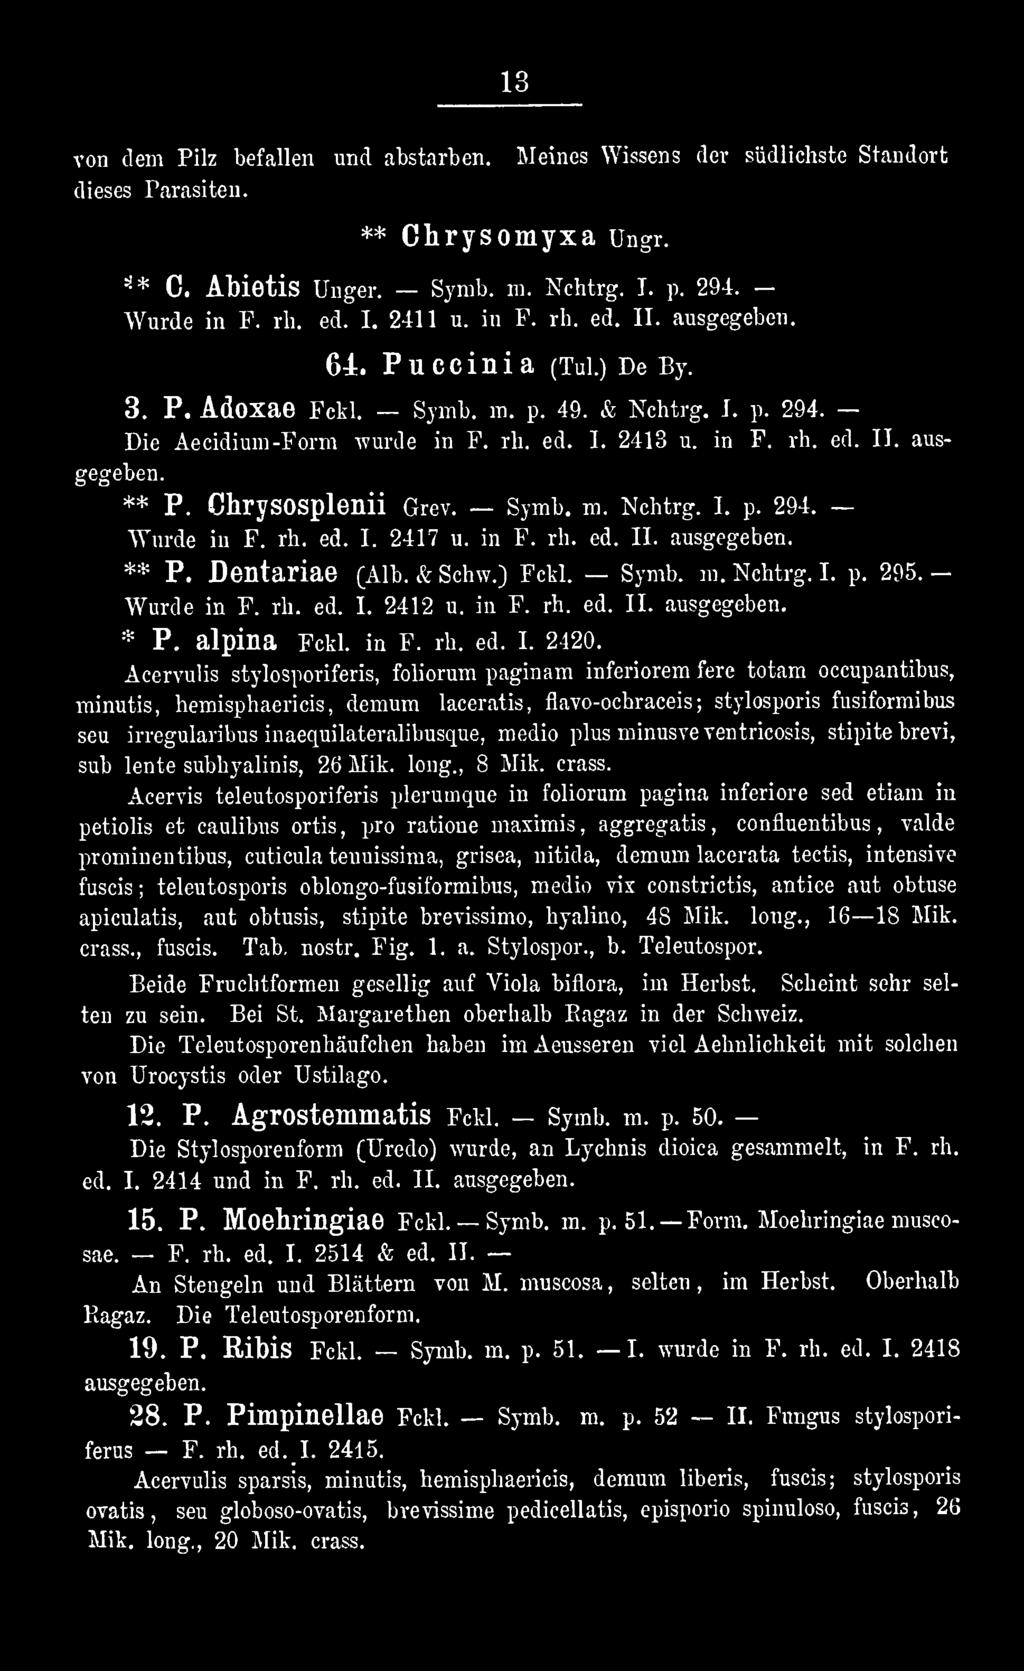 Acervulis stylosporiferis, foliorum paginam inferiorem fere totam oecupantibus, minutis, hemisphaericis, demum laceratis, flavo-ochraeeis ; stylosporis fusiformibus seu